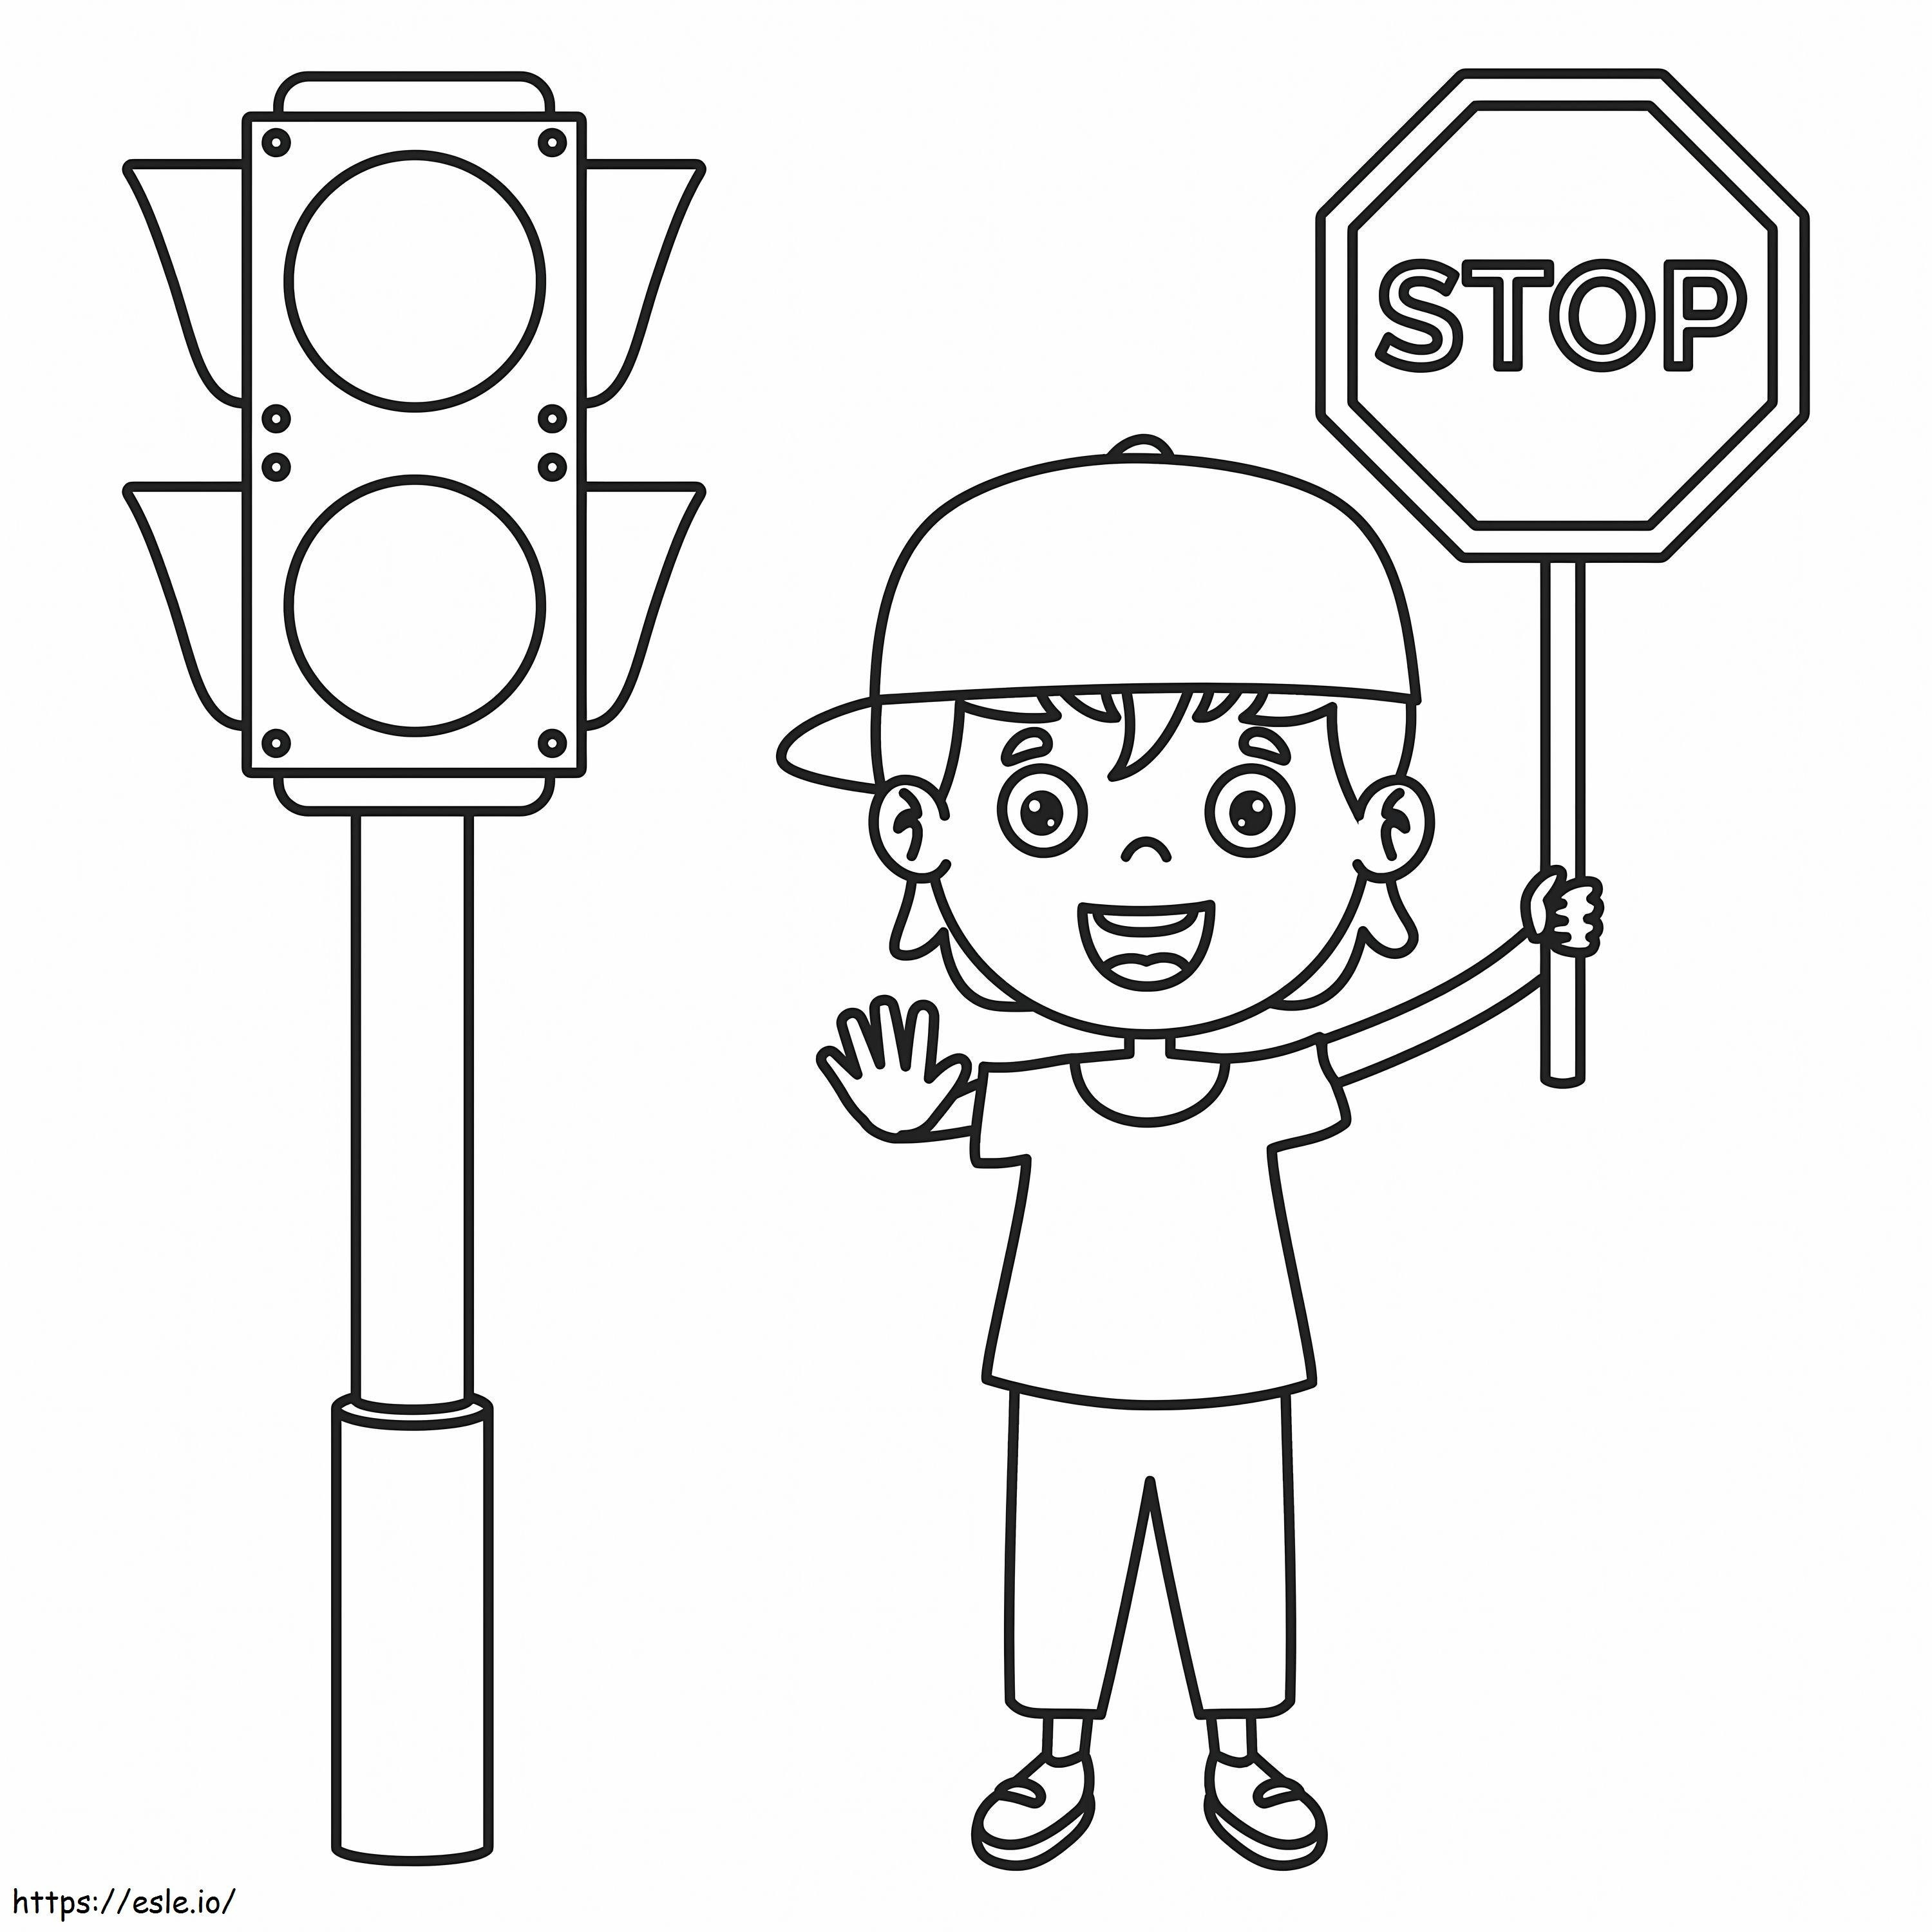 Niño divertido con señal de stop y semáforo para colorear